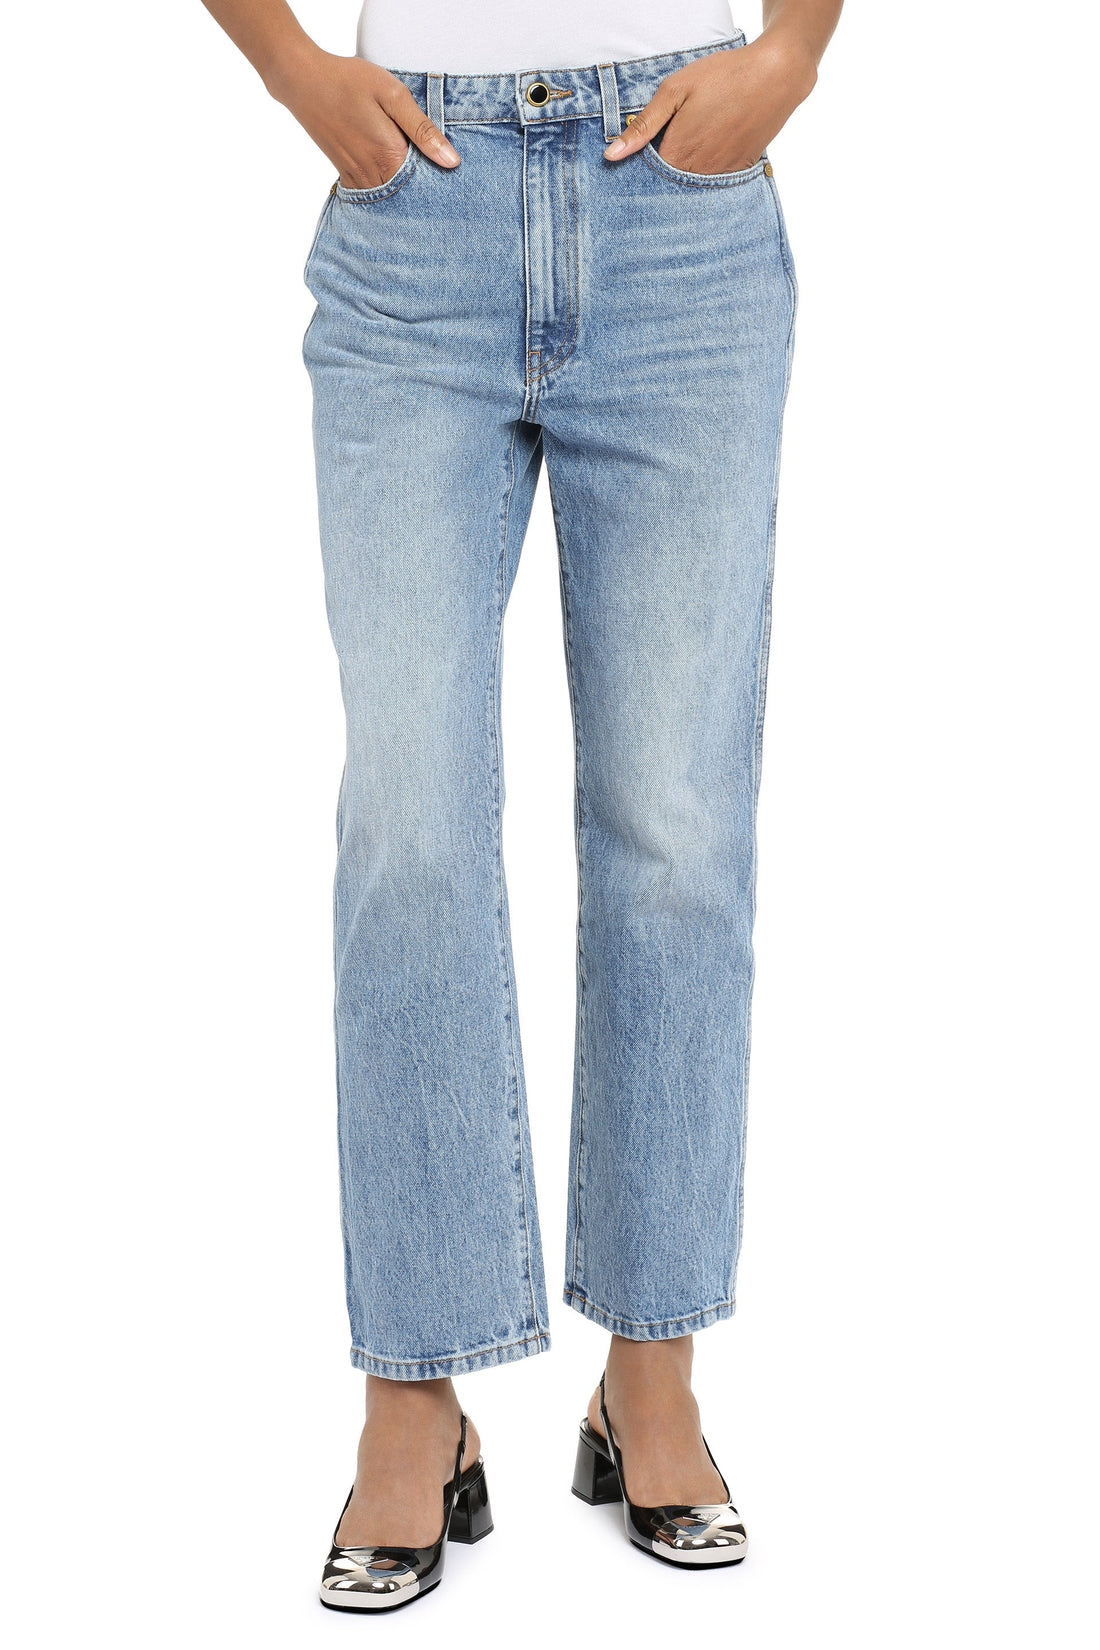 Khaite-OUTLET-SALE-Abigail straight leg jeans-ARCHIVIST